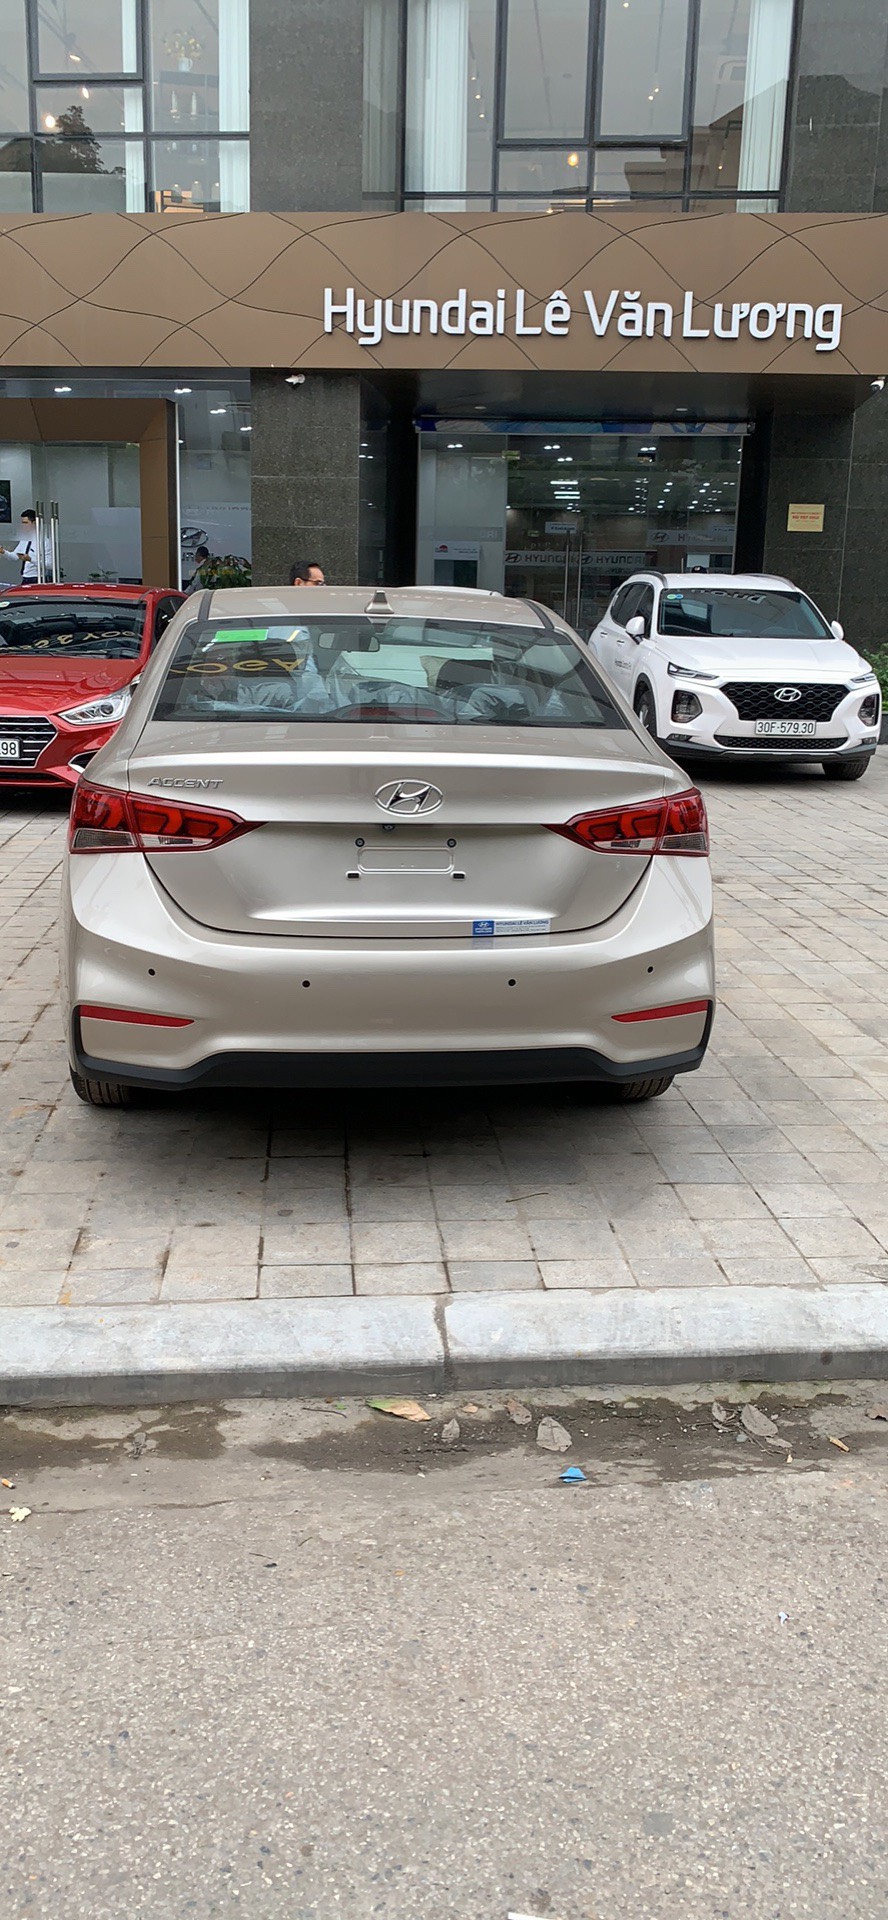 Hyundai Accent  1.4 MT Base 2019 - Bán xe Hyundai Accent đời 2019, hỗ trợ mua trả góp lên tới 85% giá trị xe, có xe giao ngay. LH ngay 0971.58.55.33